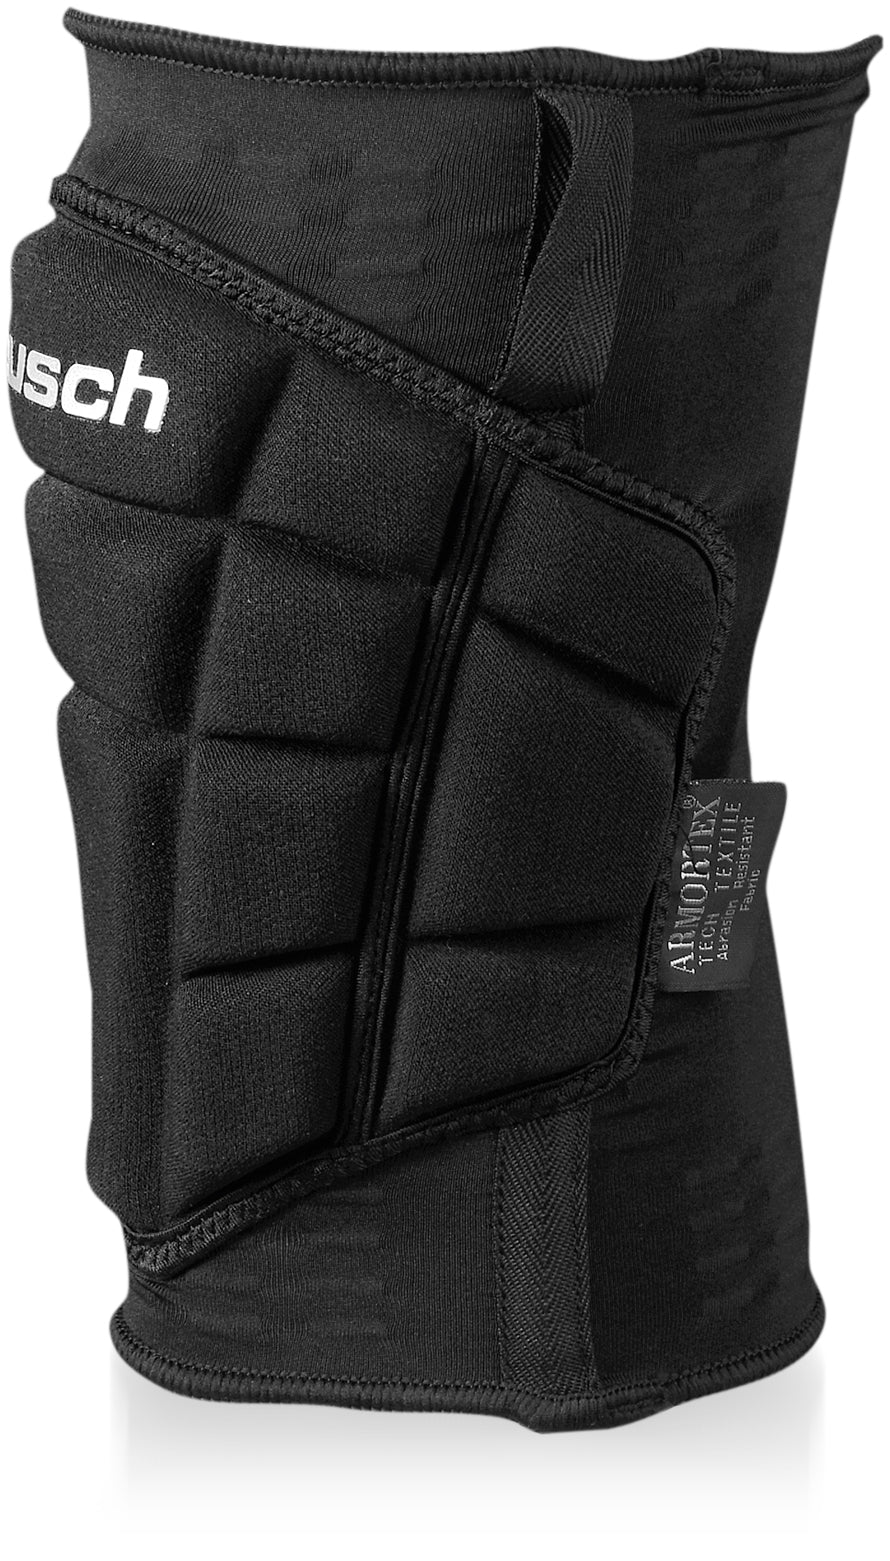 Reusch 500 77 ReuschSoccer Guard Knee – 36 Ultimate -